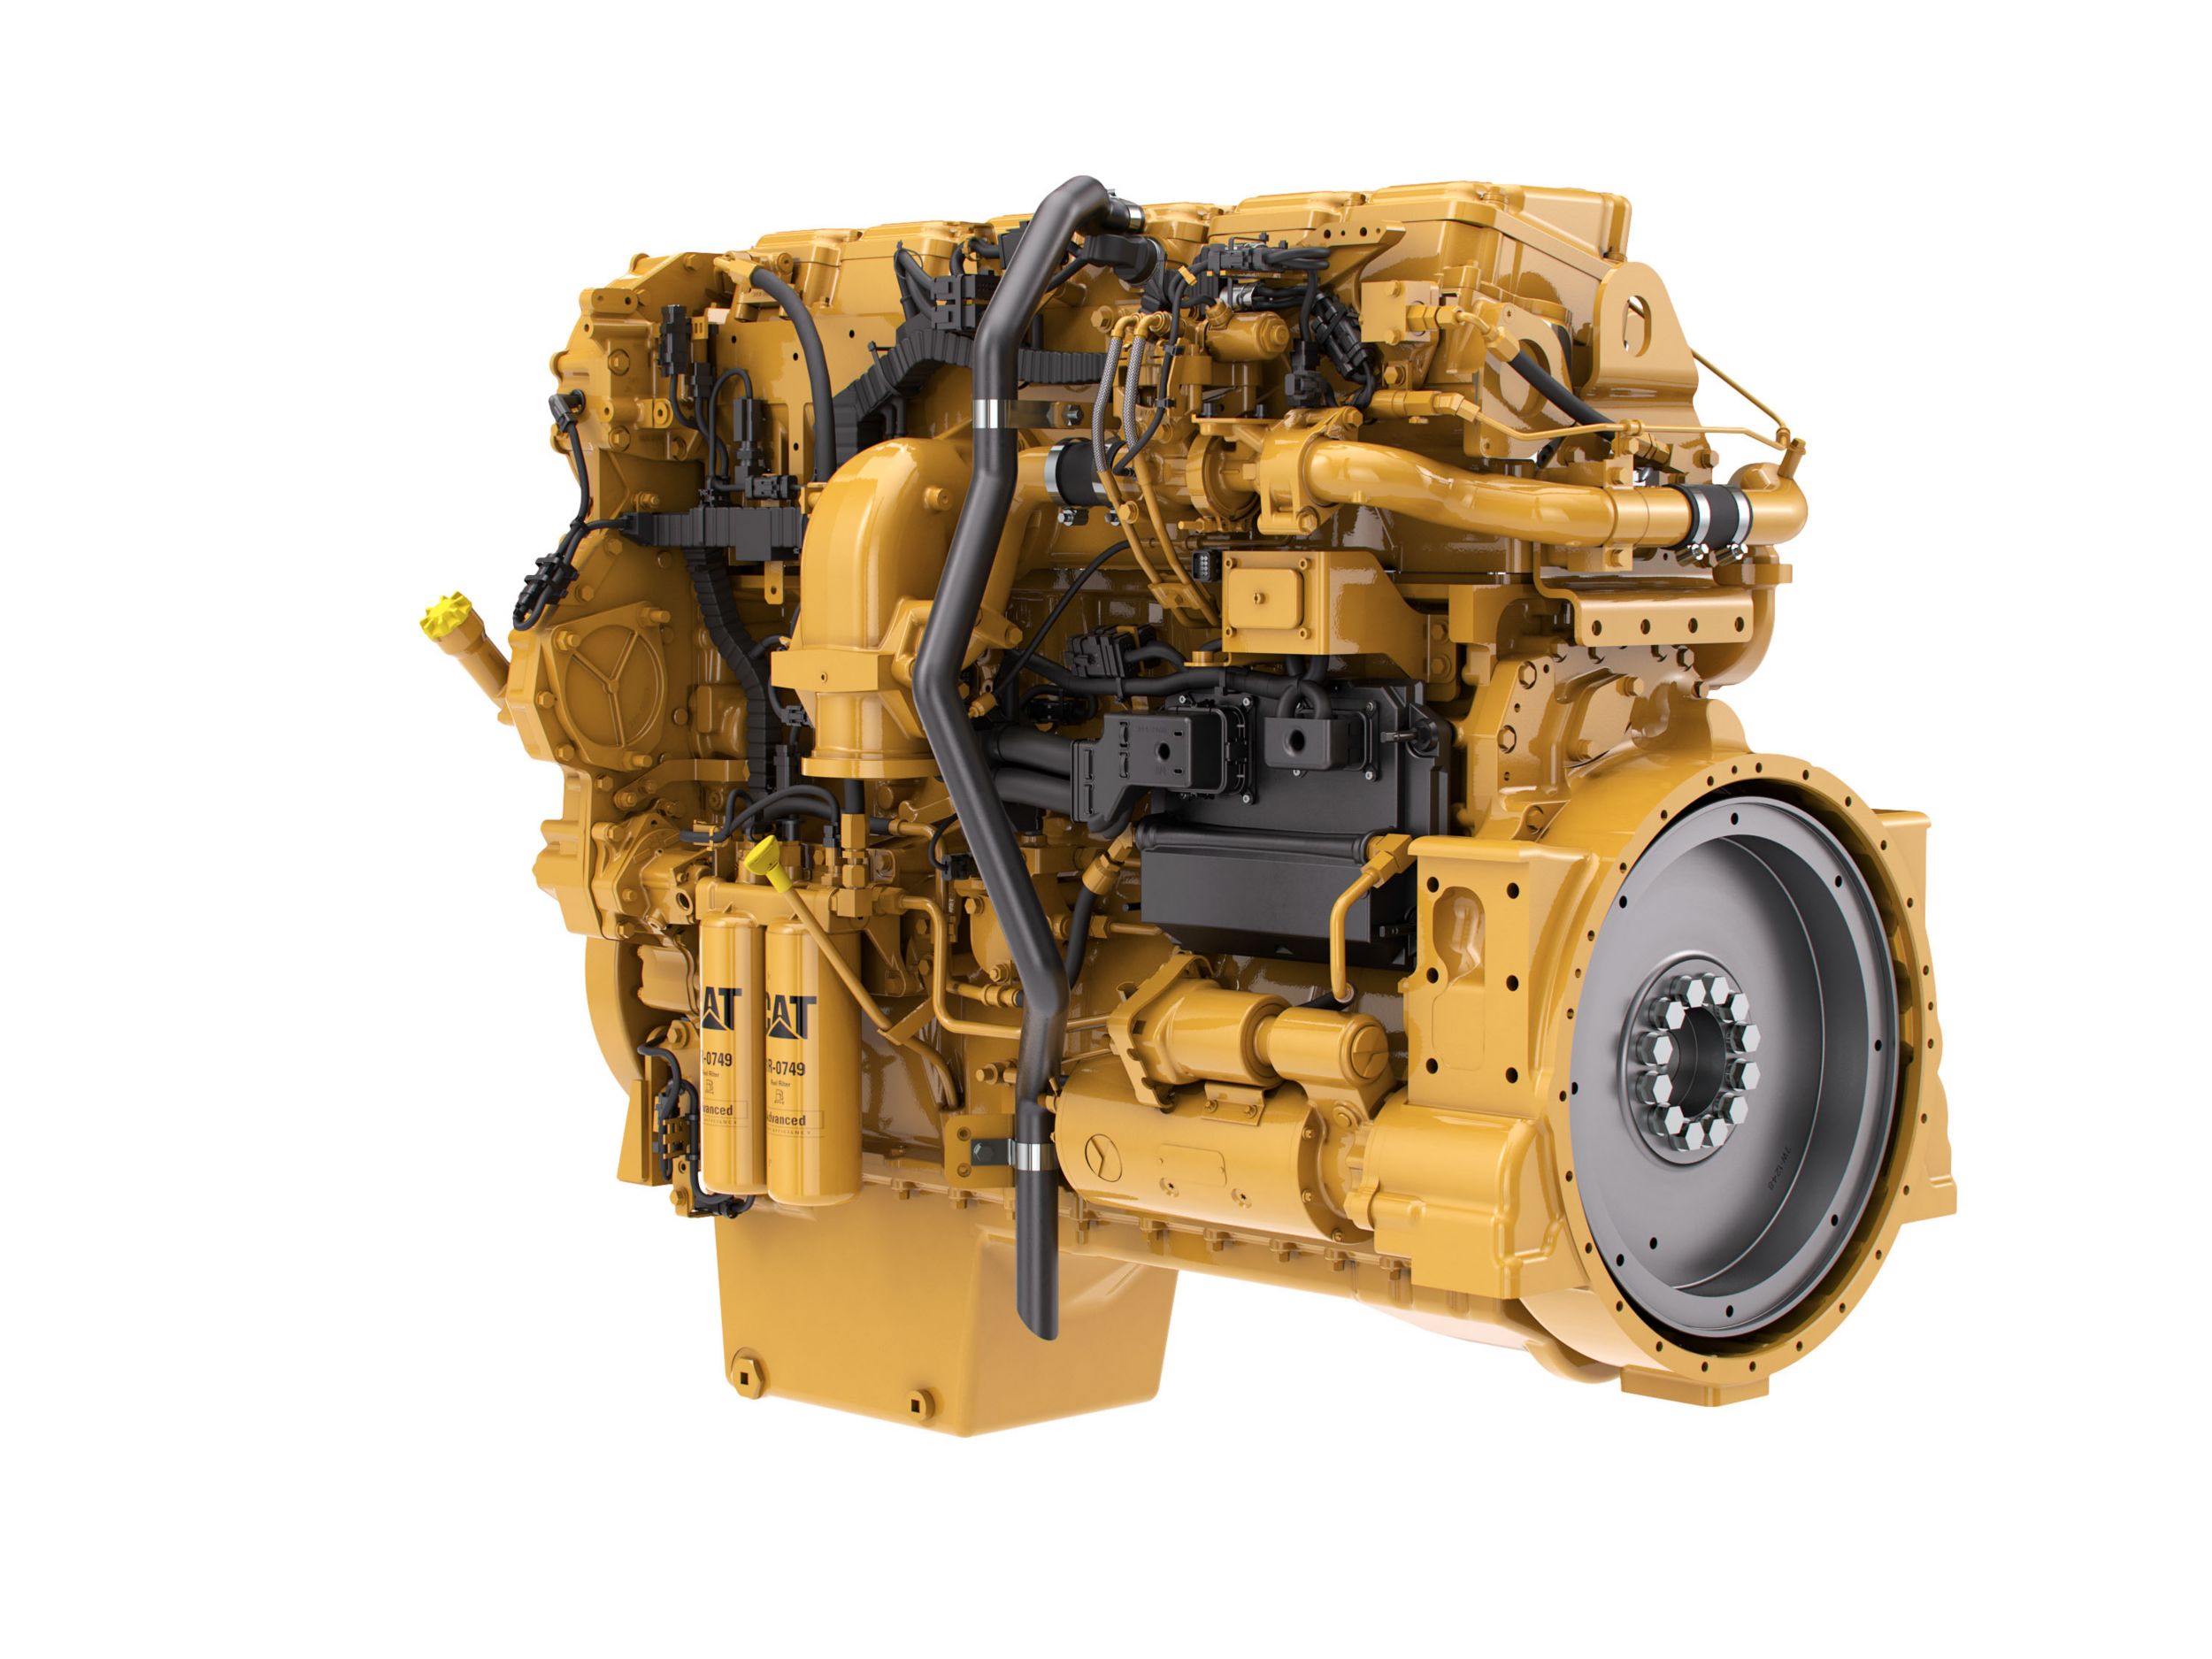 C15 Industrial Diesel Engines, Cat